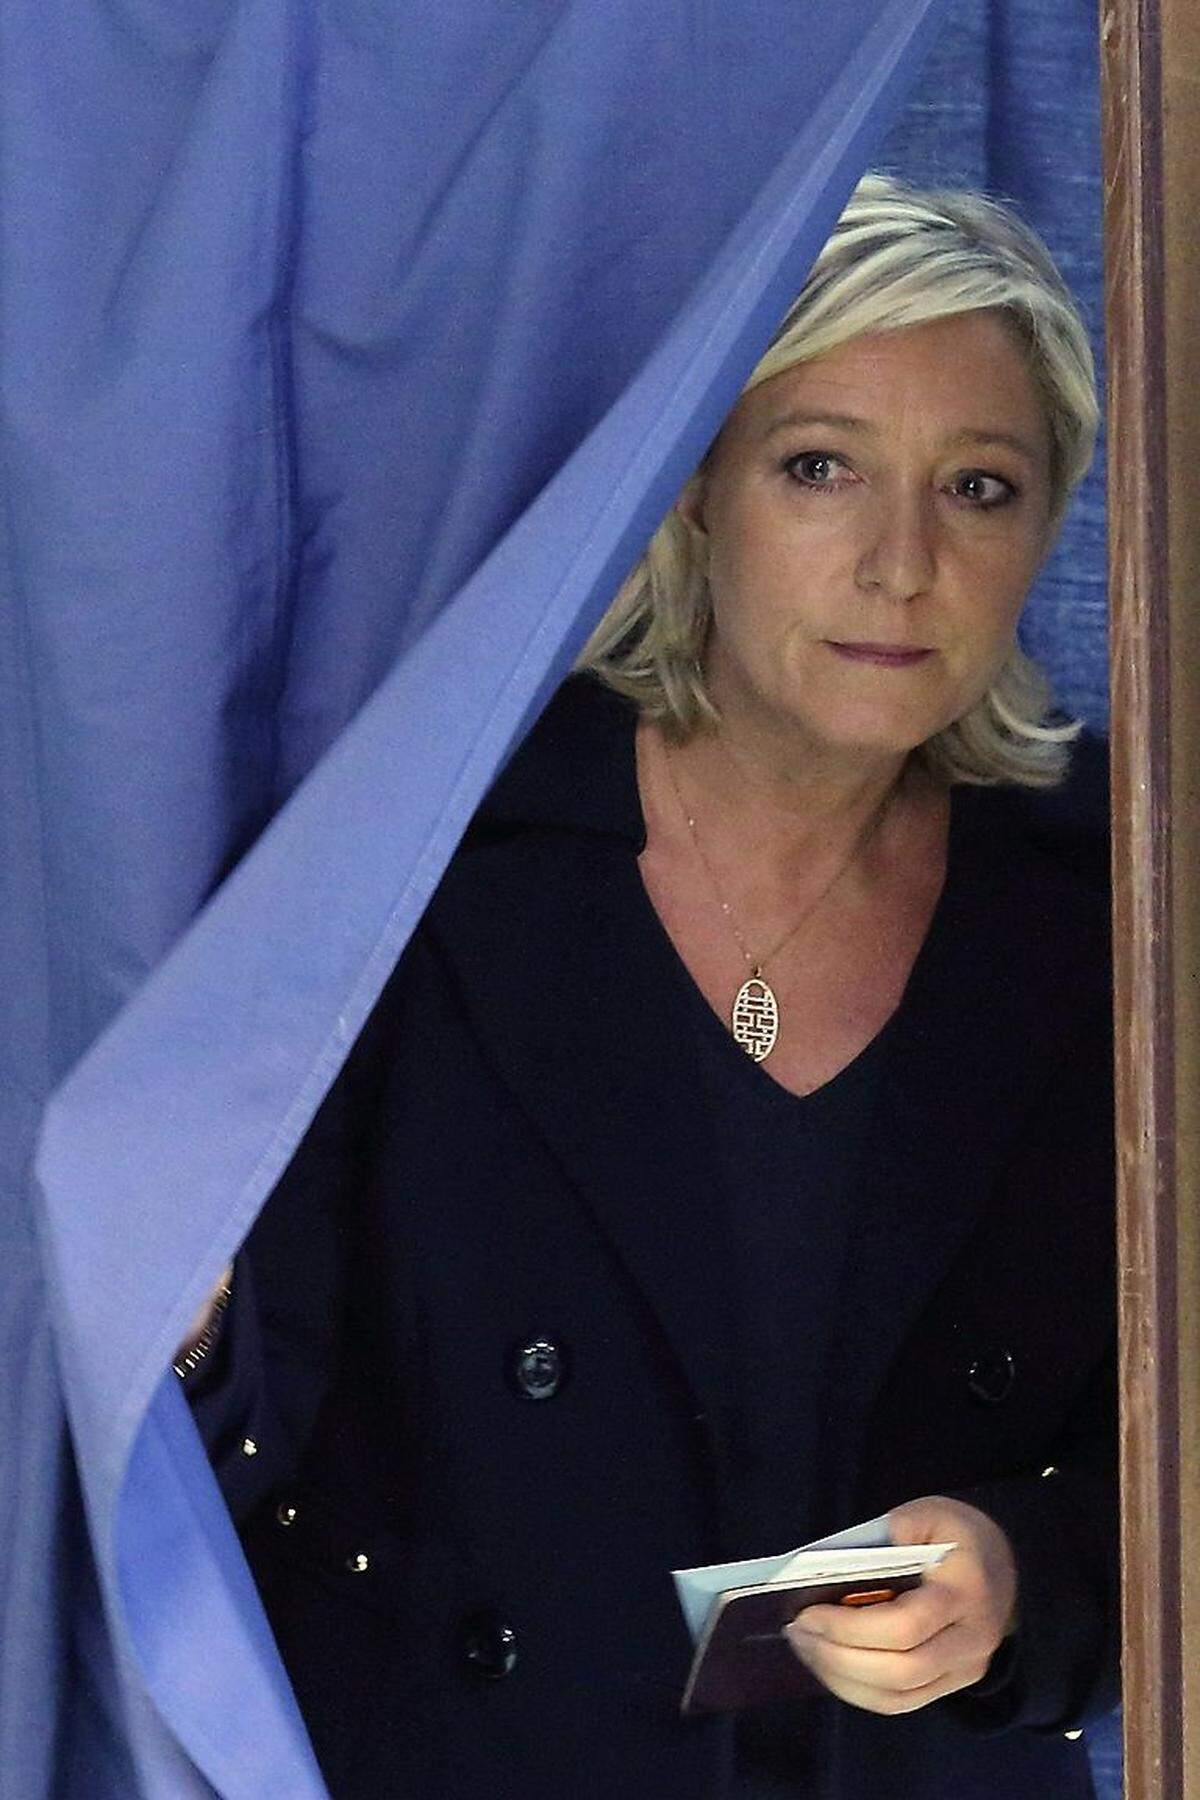 Parteichefin Marine Le Pen verglich im Dezember 2010 bei einer Rede in Lyon die Gebete von Moslems auf offener Straße mit der Besetzung Frankreichs durch das nationalsozialistische Deutschland. Die Staatsanwaltschaft leitete daraufhin ein Verfahren wegen „Aufstachelung von Hass“ ein. Das Europaparlament hob ihre Immunität auf.